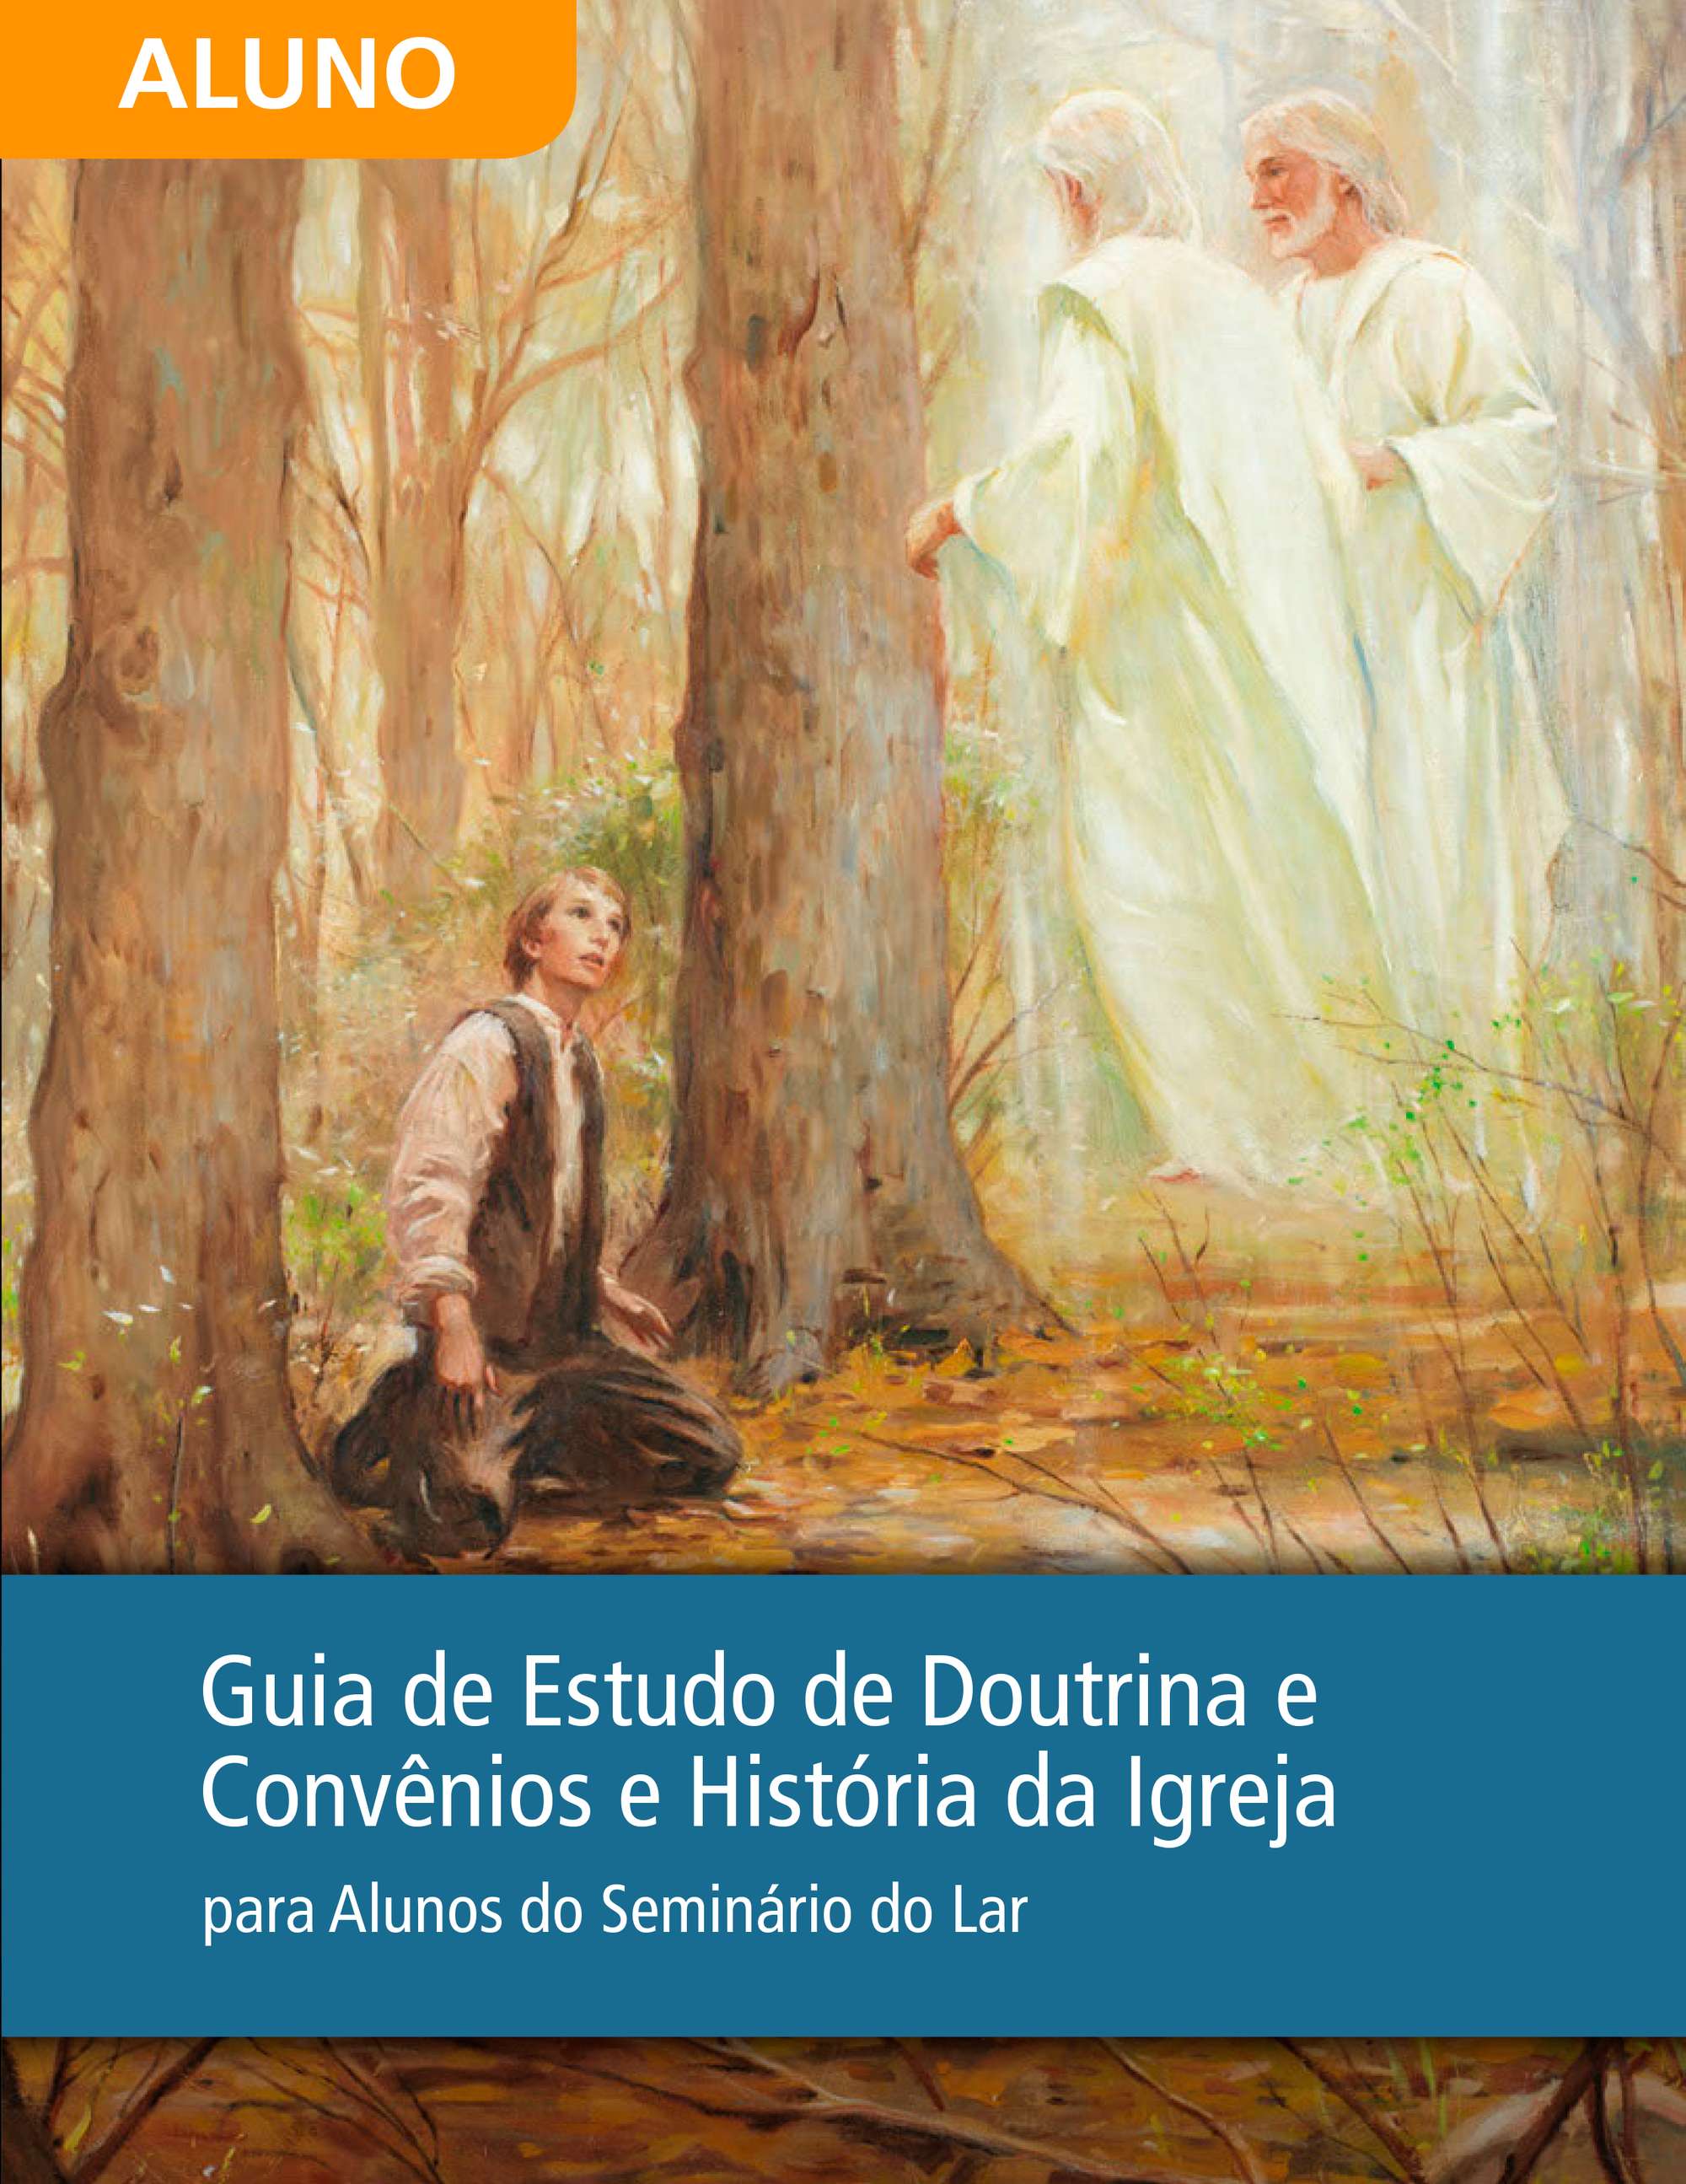 Guia de Estudo de Doutrina e Convênios e História da Igreja para Alunos do Seminário do Lar